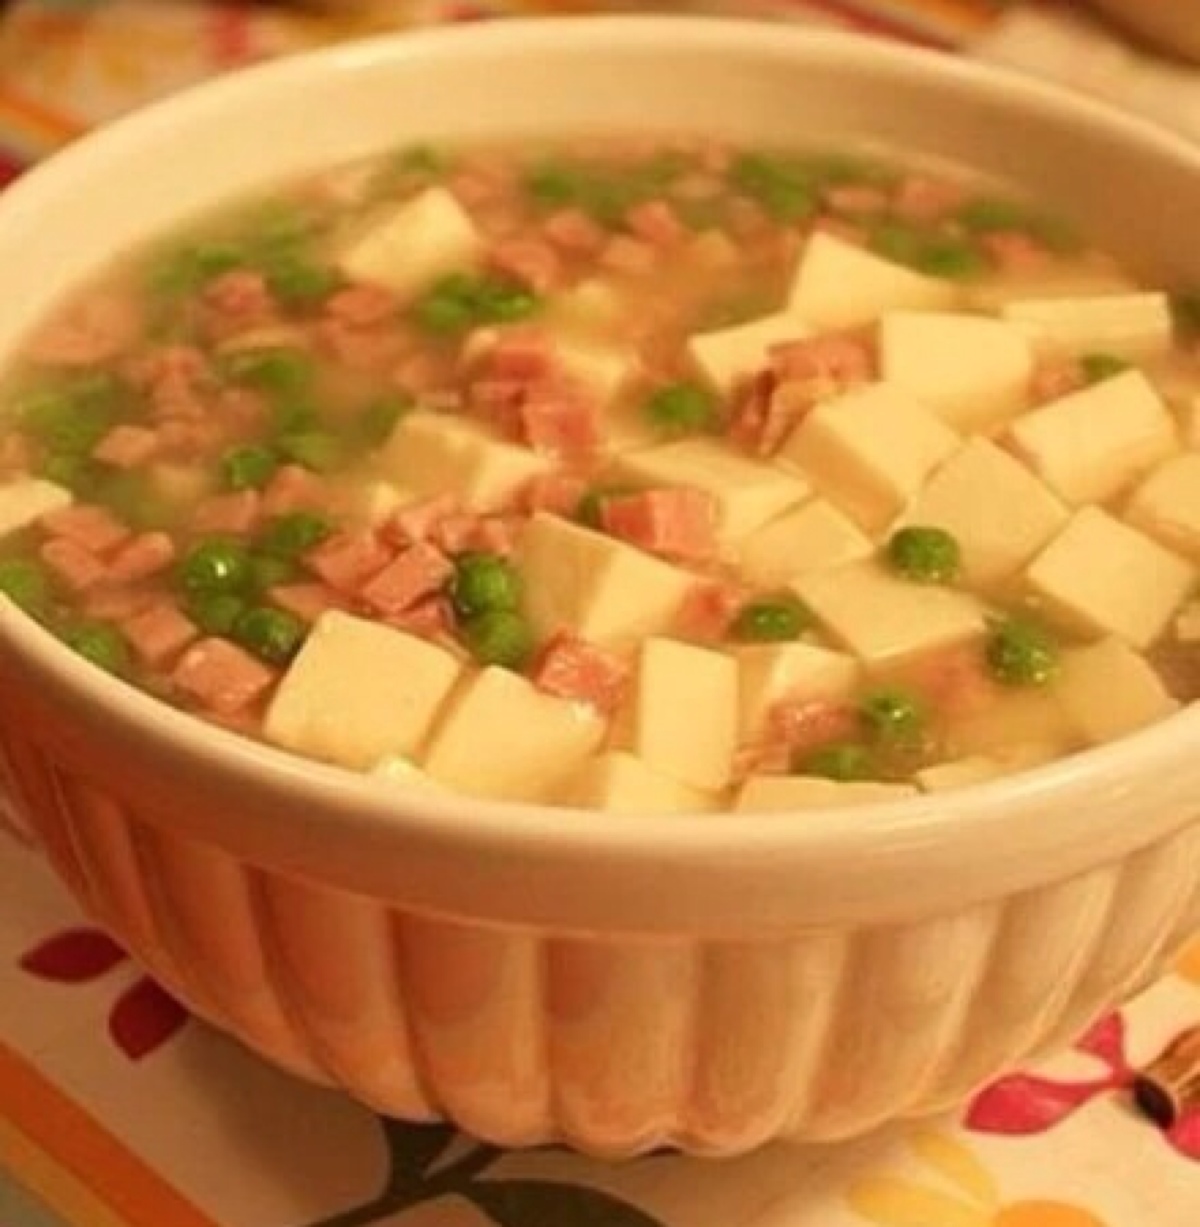 嫩豆腐切小块备用,火腿尽量切粒,豌豆米焯水备用 2.